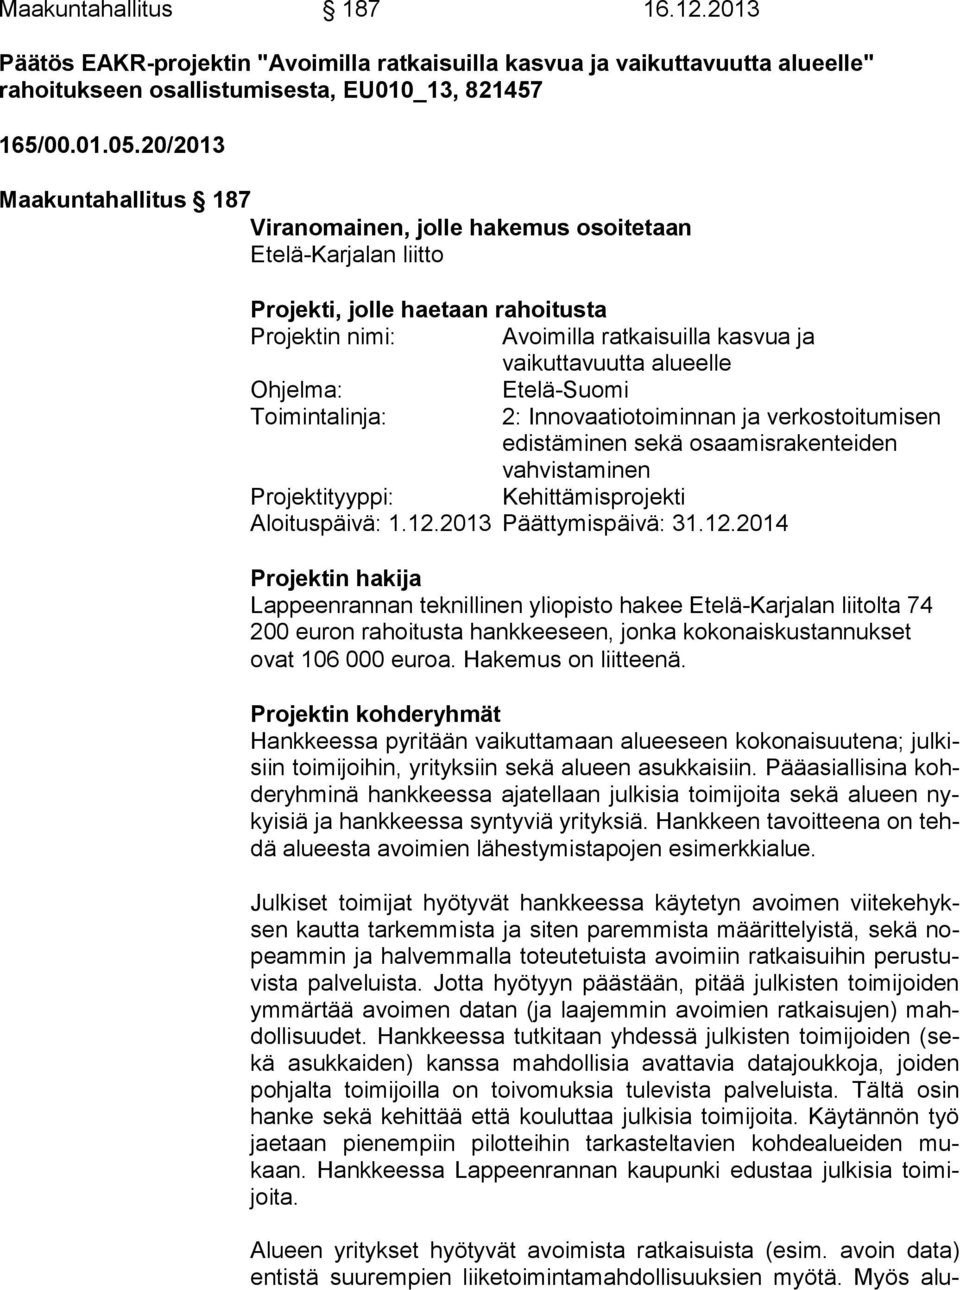 Ohjelma: Etelä-Suomi Toimintalinja: 2: Innovaatiotoiminnan ja verkostoitumisen edistäminen sekä osaamisrakenteiden vahvistaminen Projektityyppi: Kehittämisprojekti Aloituspäivä: 1.12.